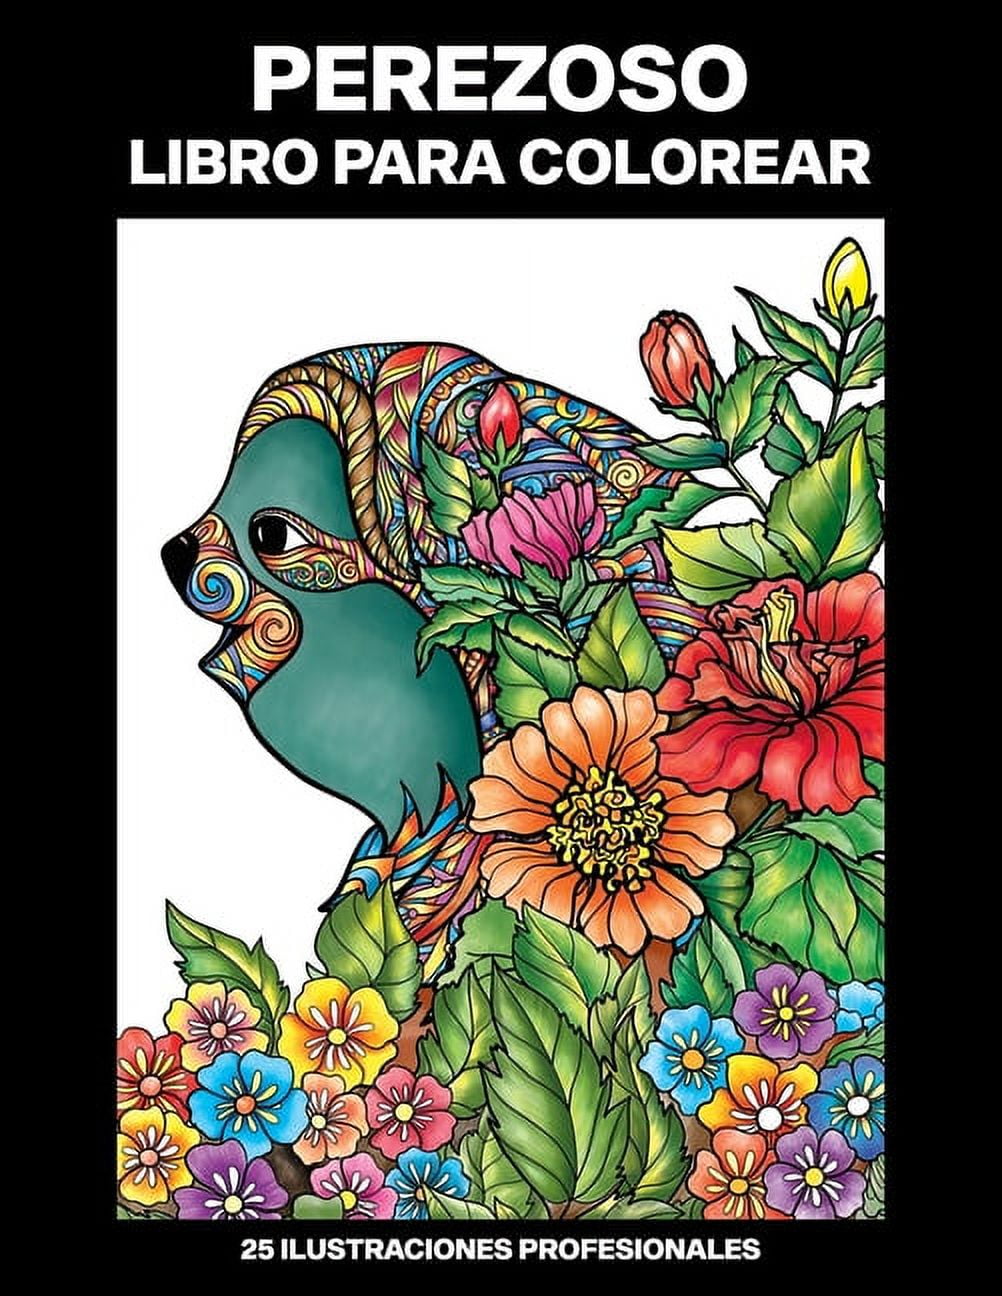 Páginas de libros para colorear para adultos para relajarse.